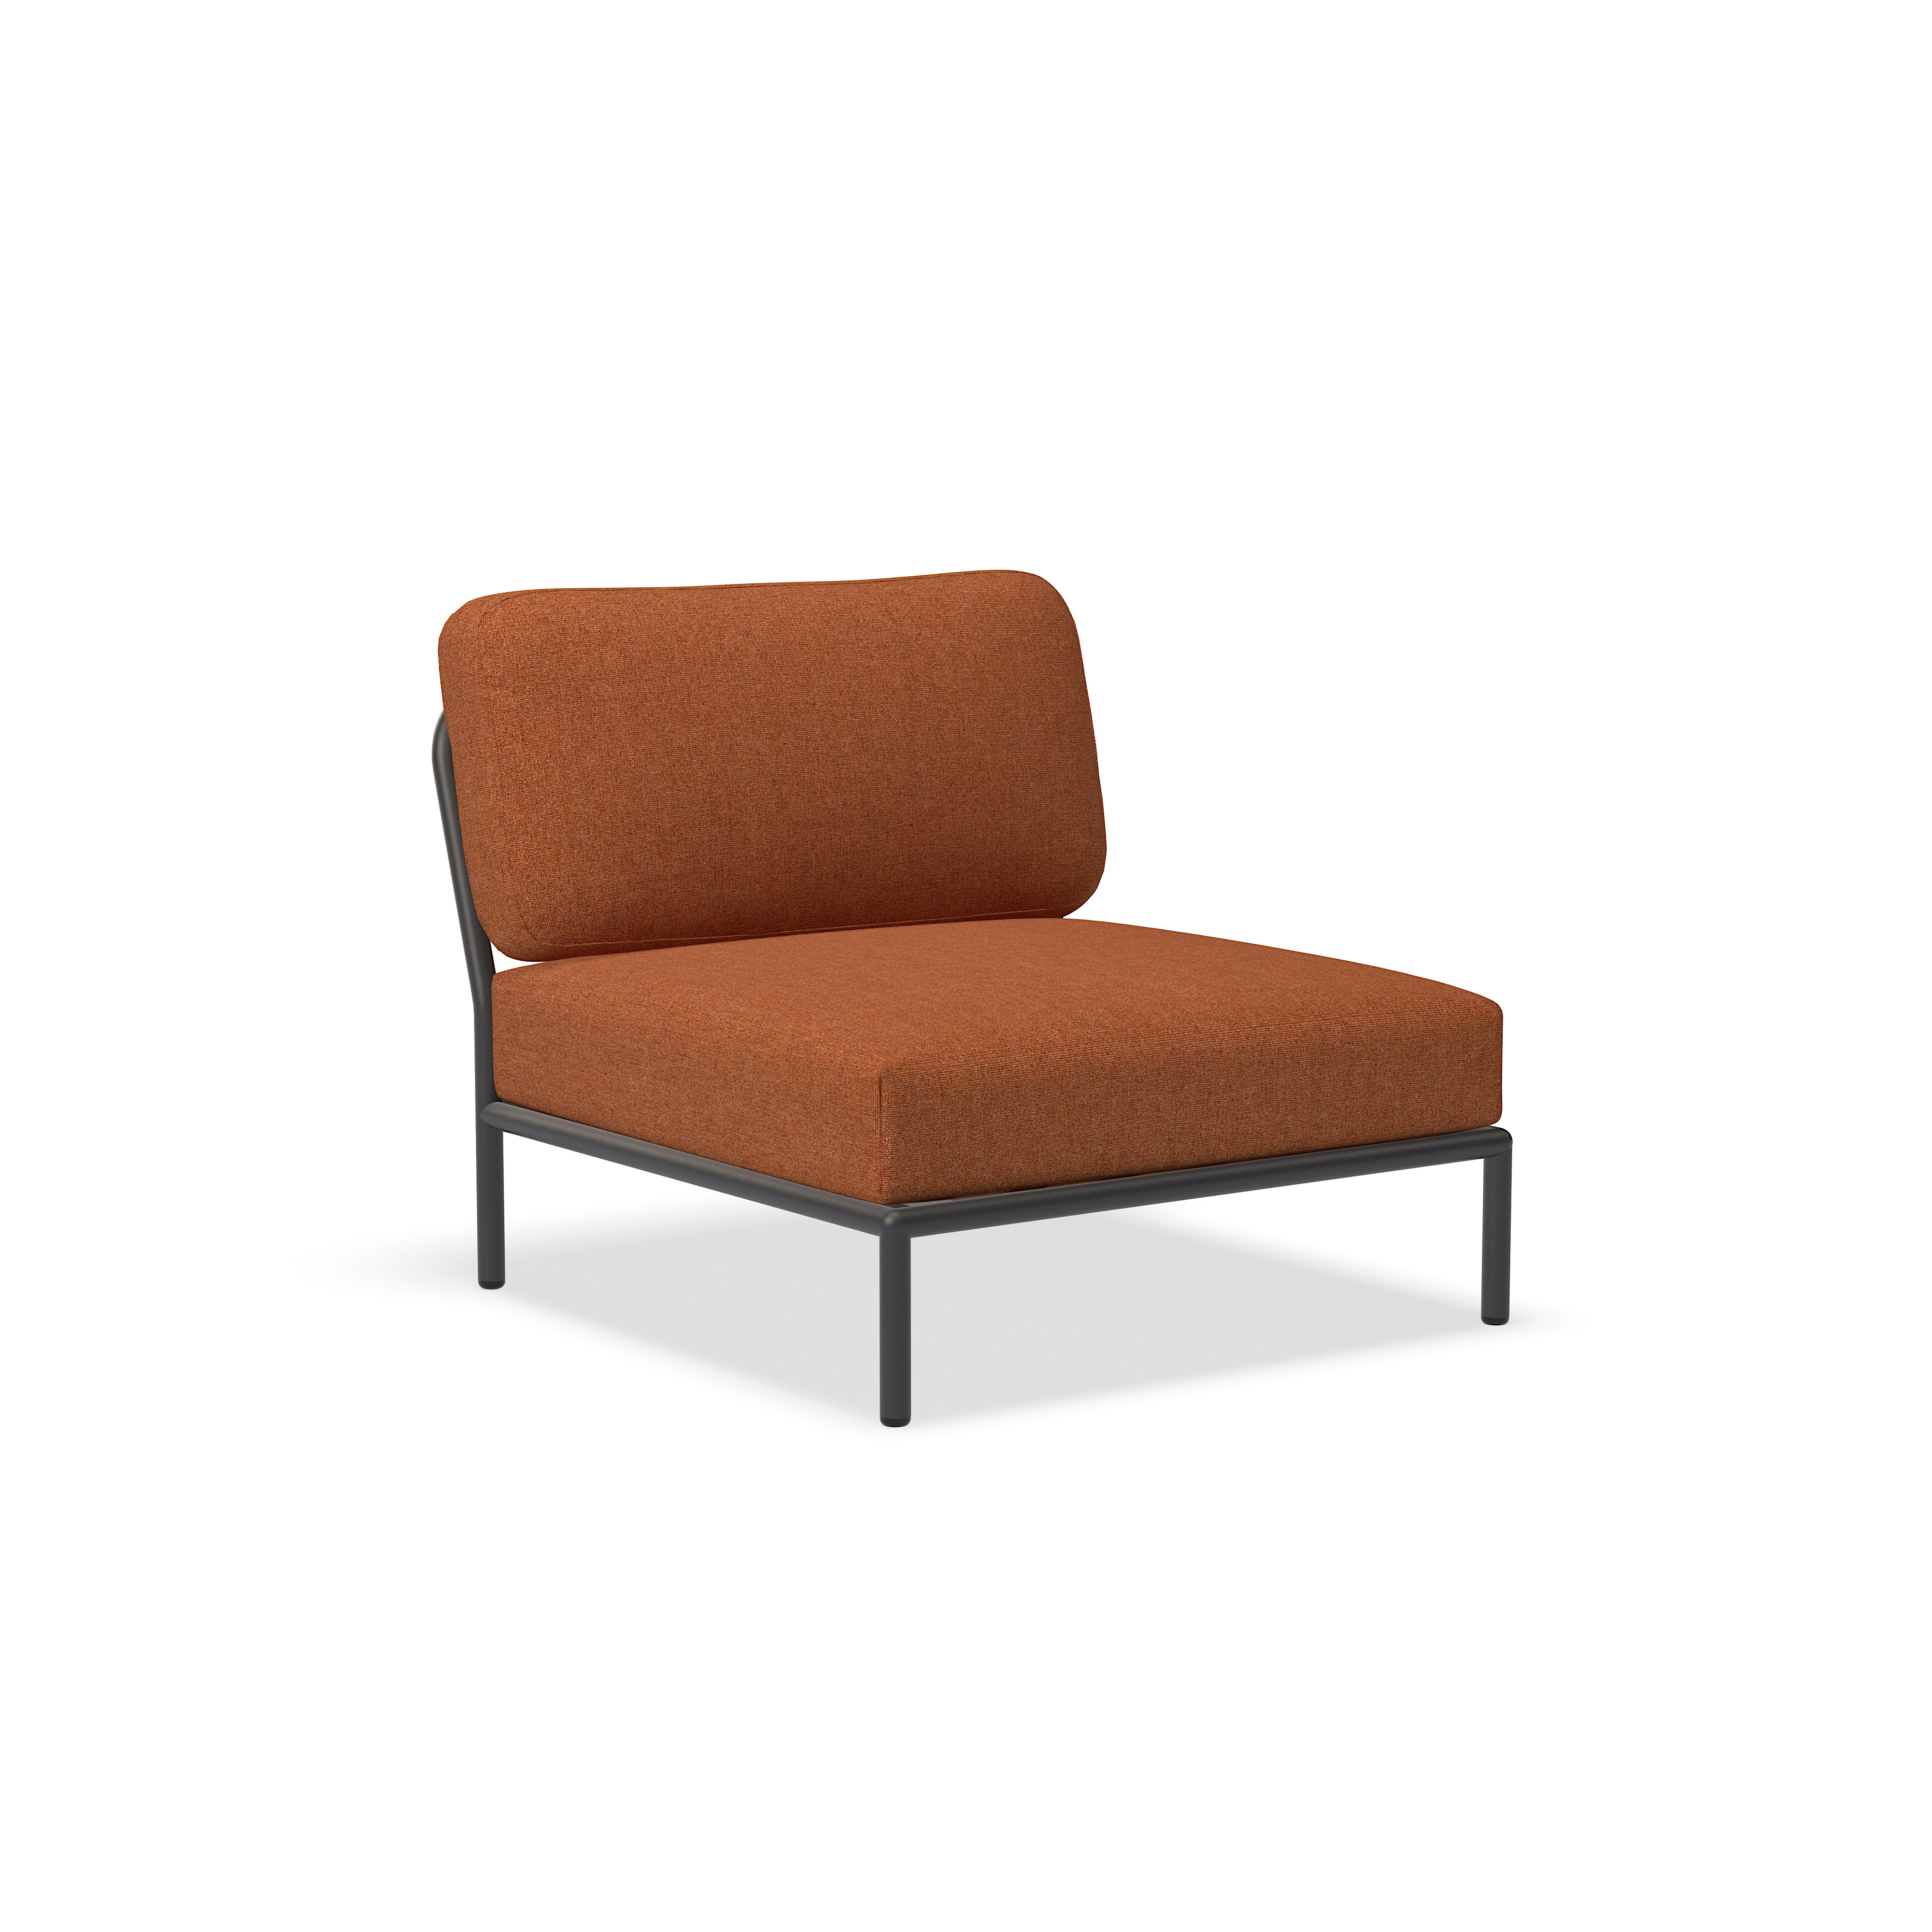 الكرسي - 12205-1751 - كرسي ، صدأ (HERITAGE) ، هيكل رمادي غامق